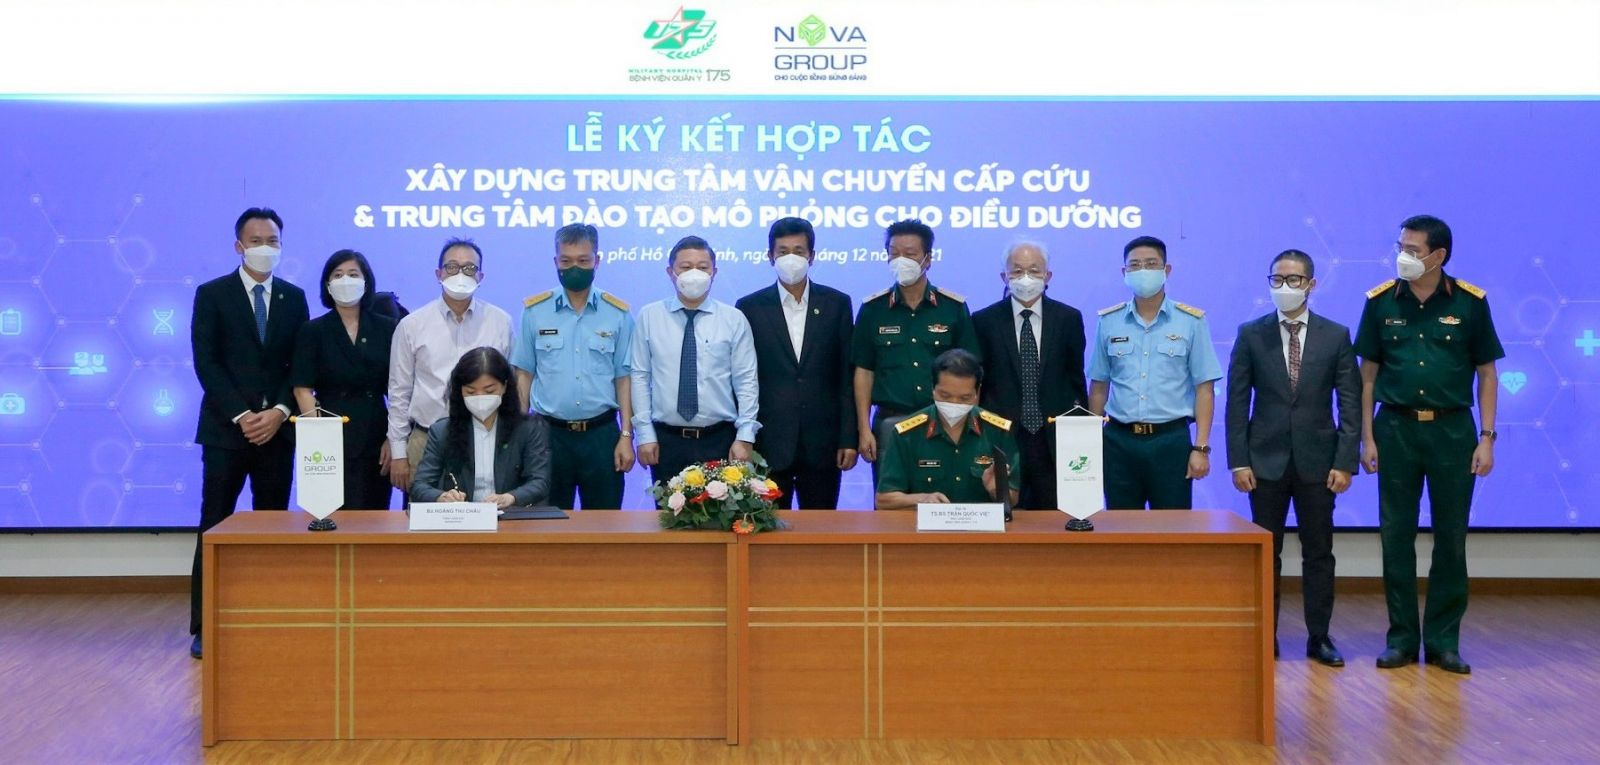 đại diện NovaGroup và đại diện Bệnh viện Quân y 175 tiến hành nghi thức ký kết hợp tác